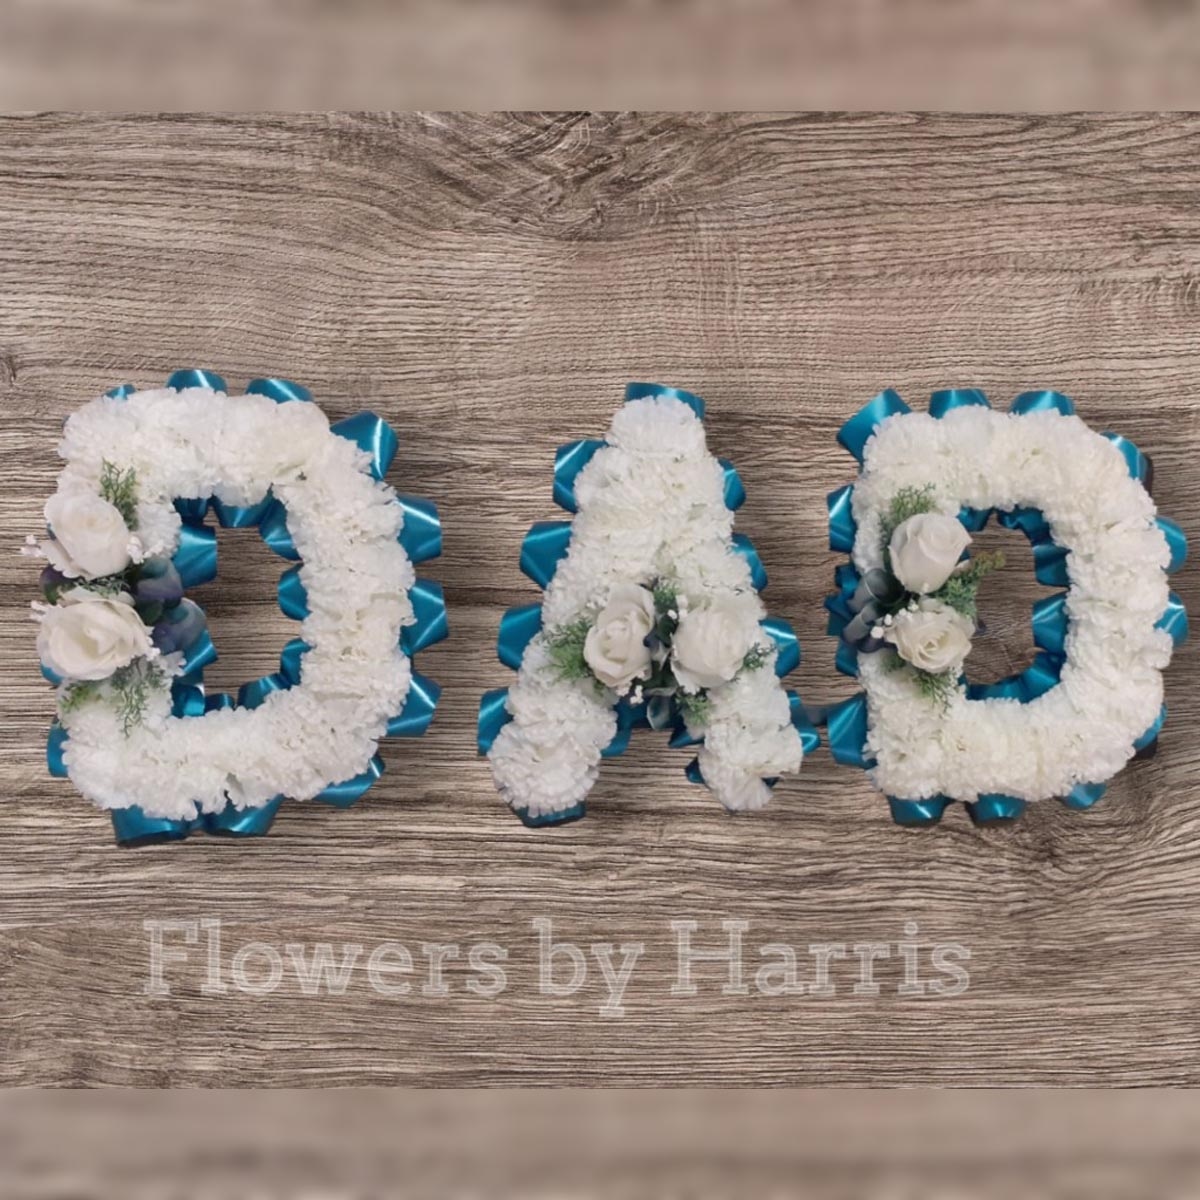 Silk Dad Tribute Flower Arrangement